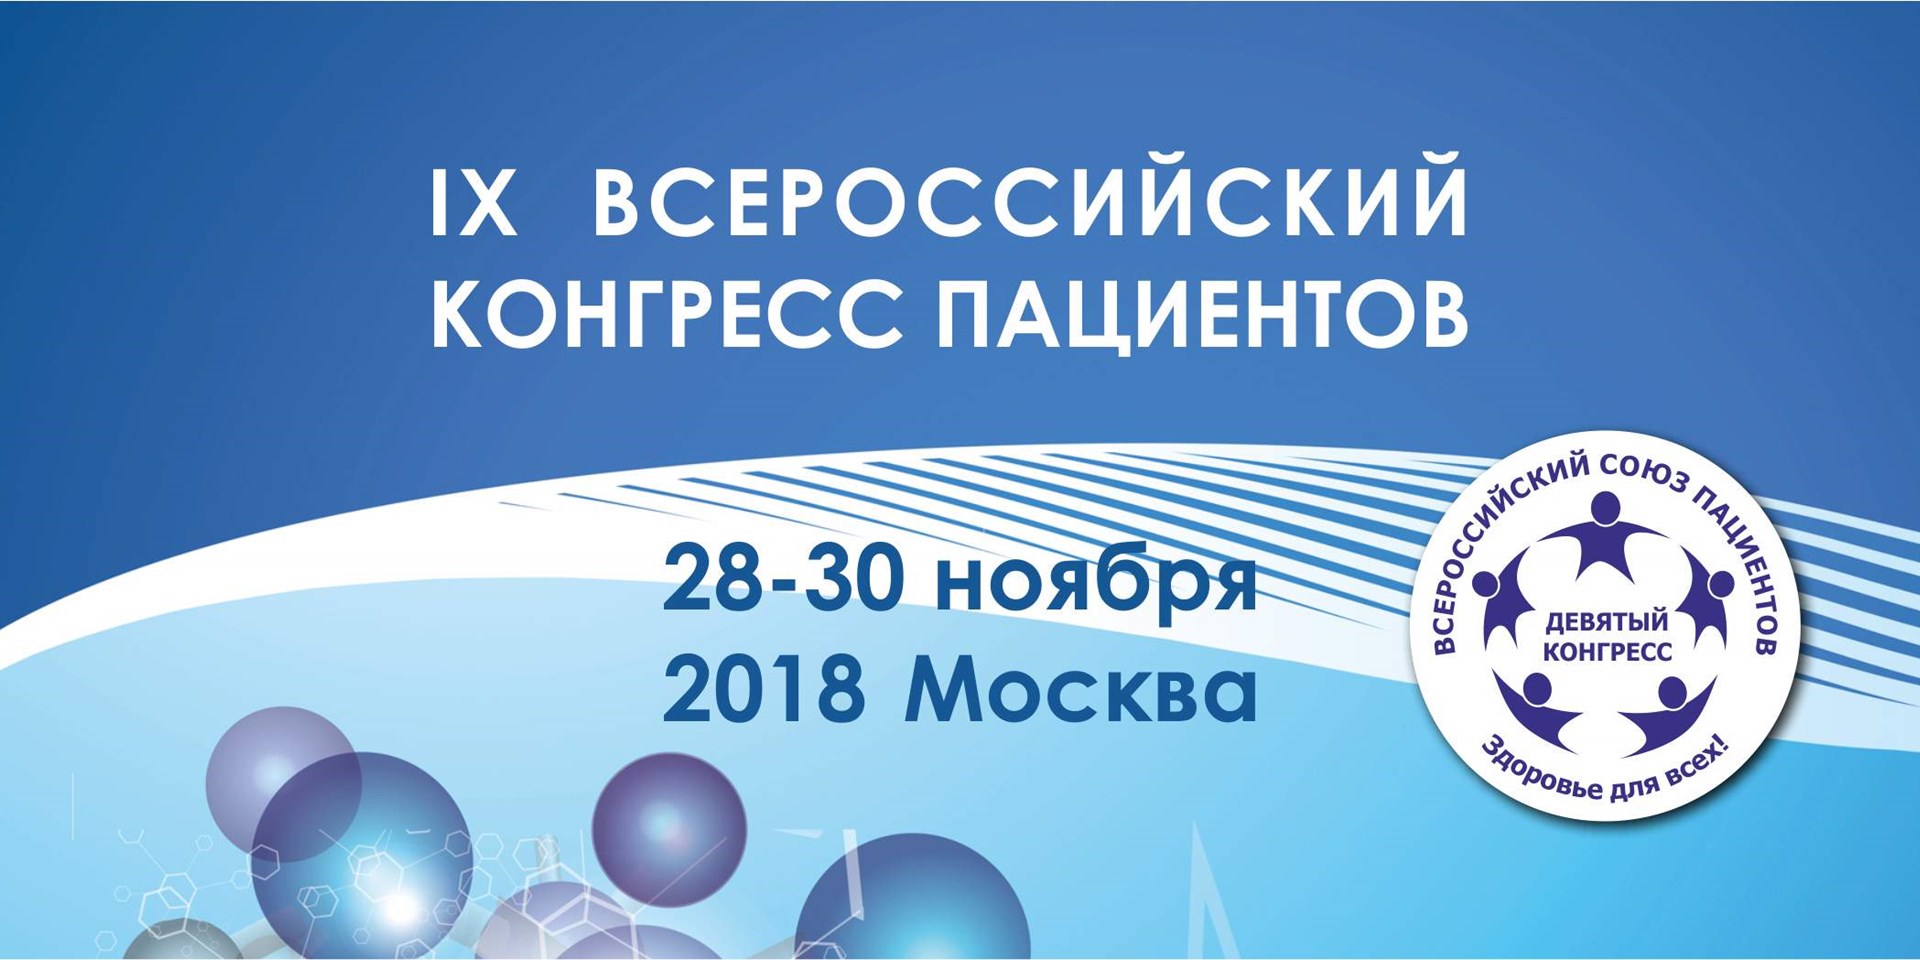 Готовимся к проведению IX Всероссийского конгресса пациентов